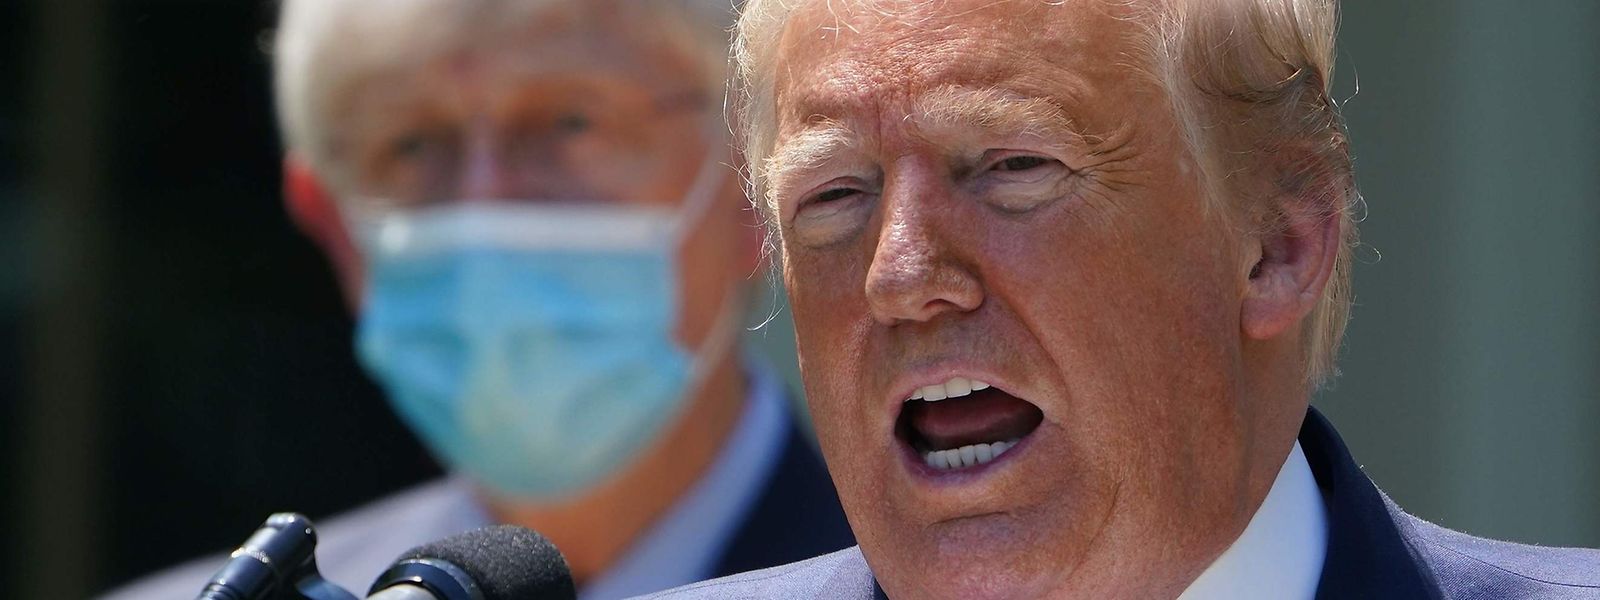 Donald Trump a obtenu le feu vert de son médecin pour prendre le traitement dont aucune preuve d'efficacité n'a été apportée.